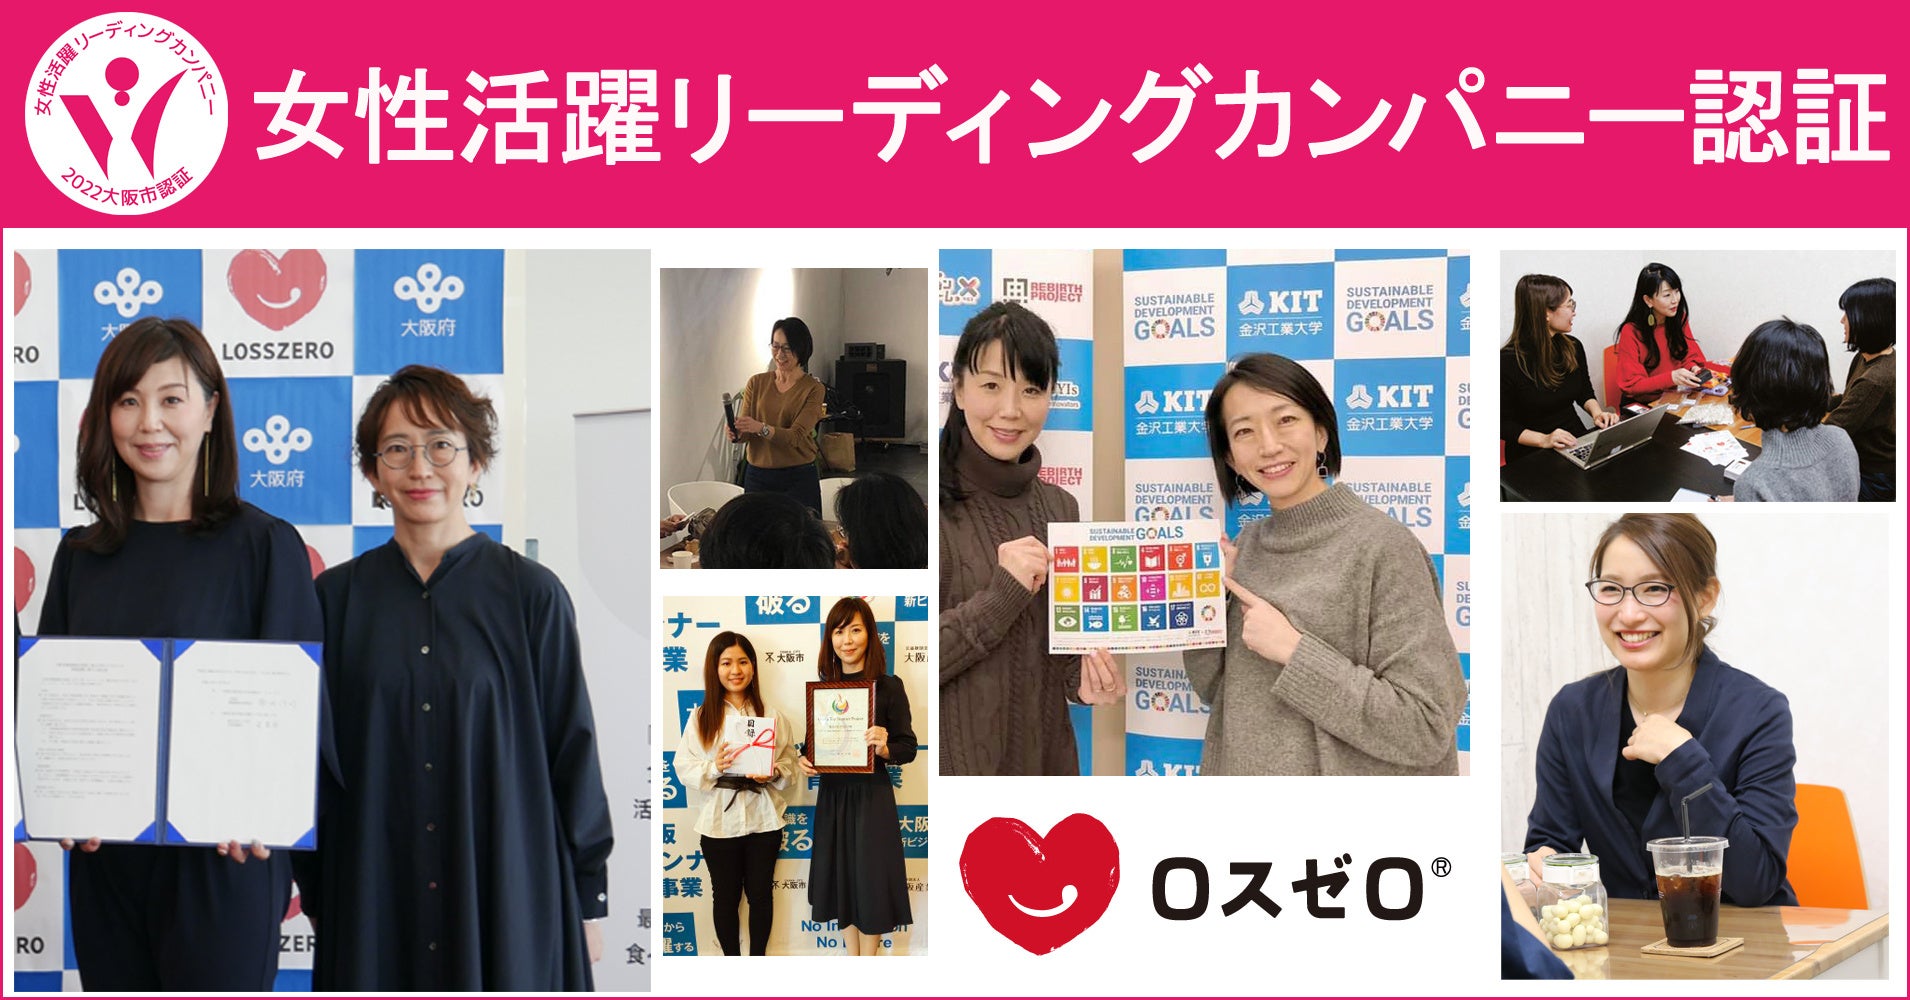 ロスゼロが大阪市女性活躍リーディングカンパニーとして認証のサブ画像1